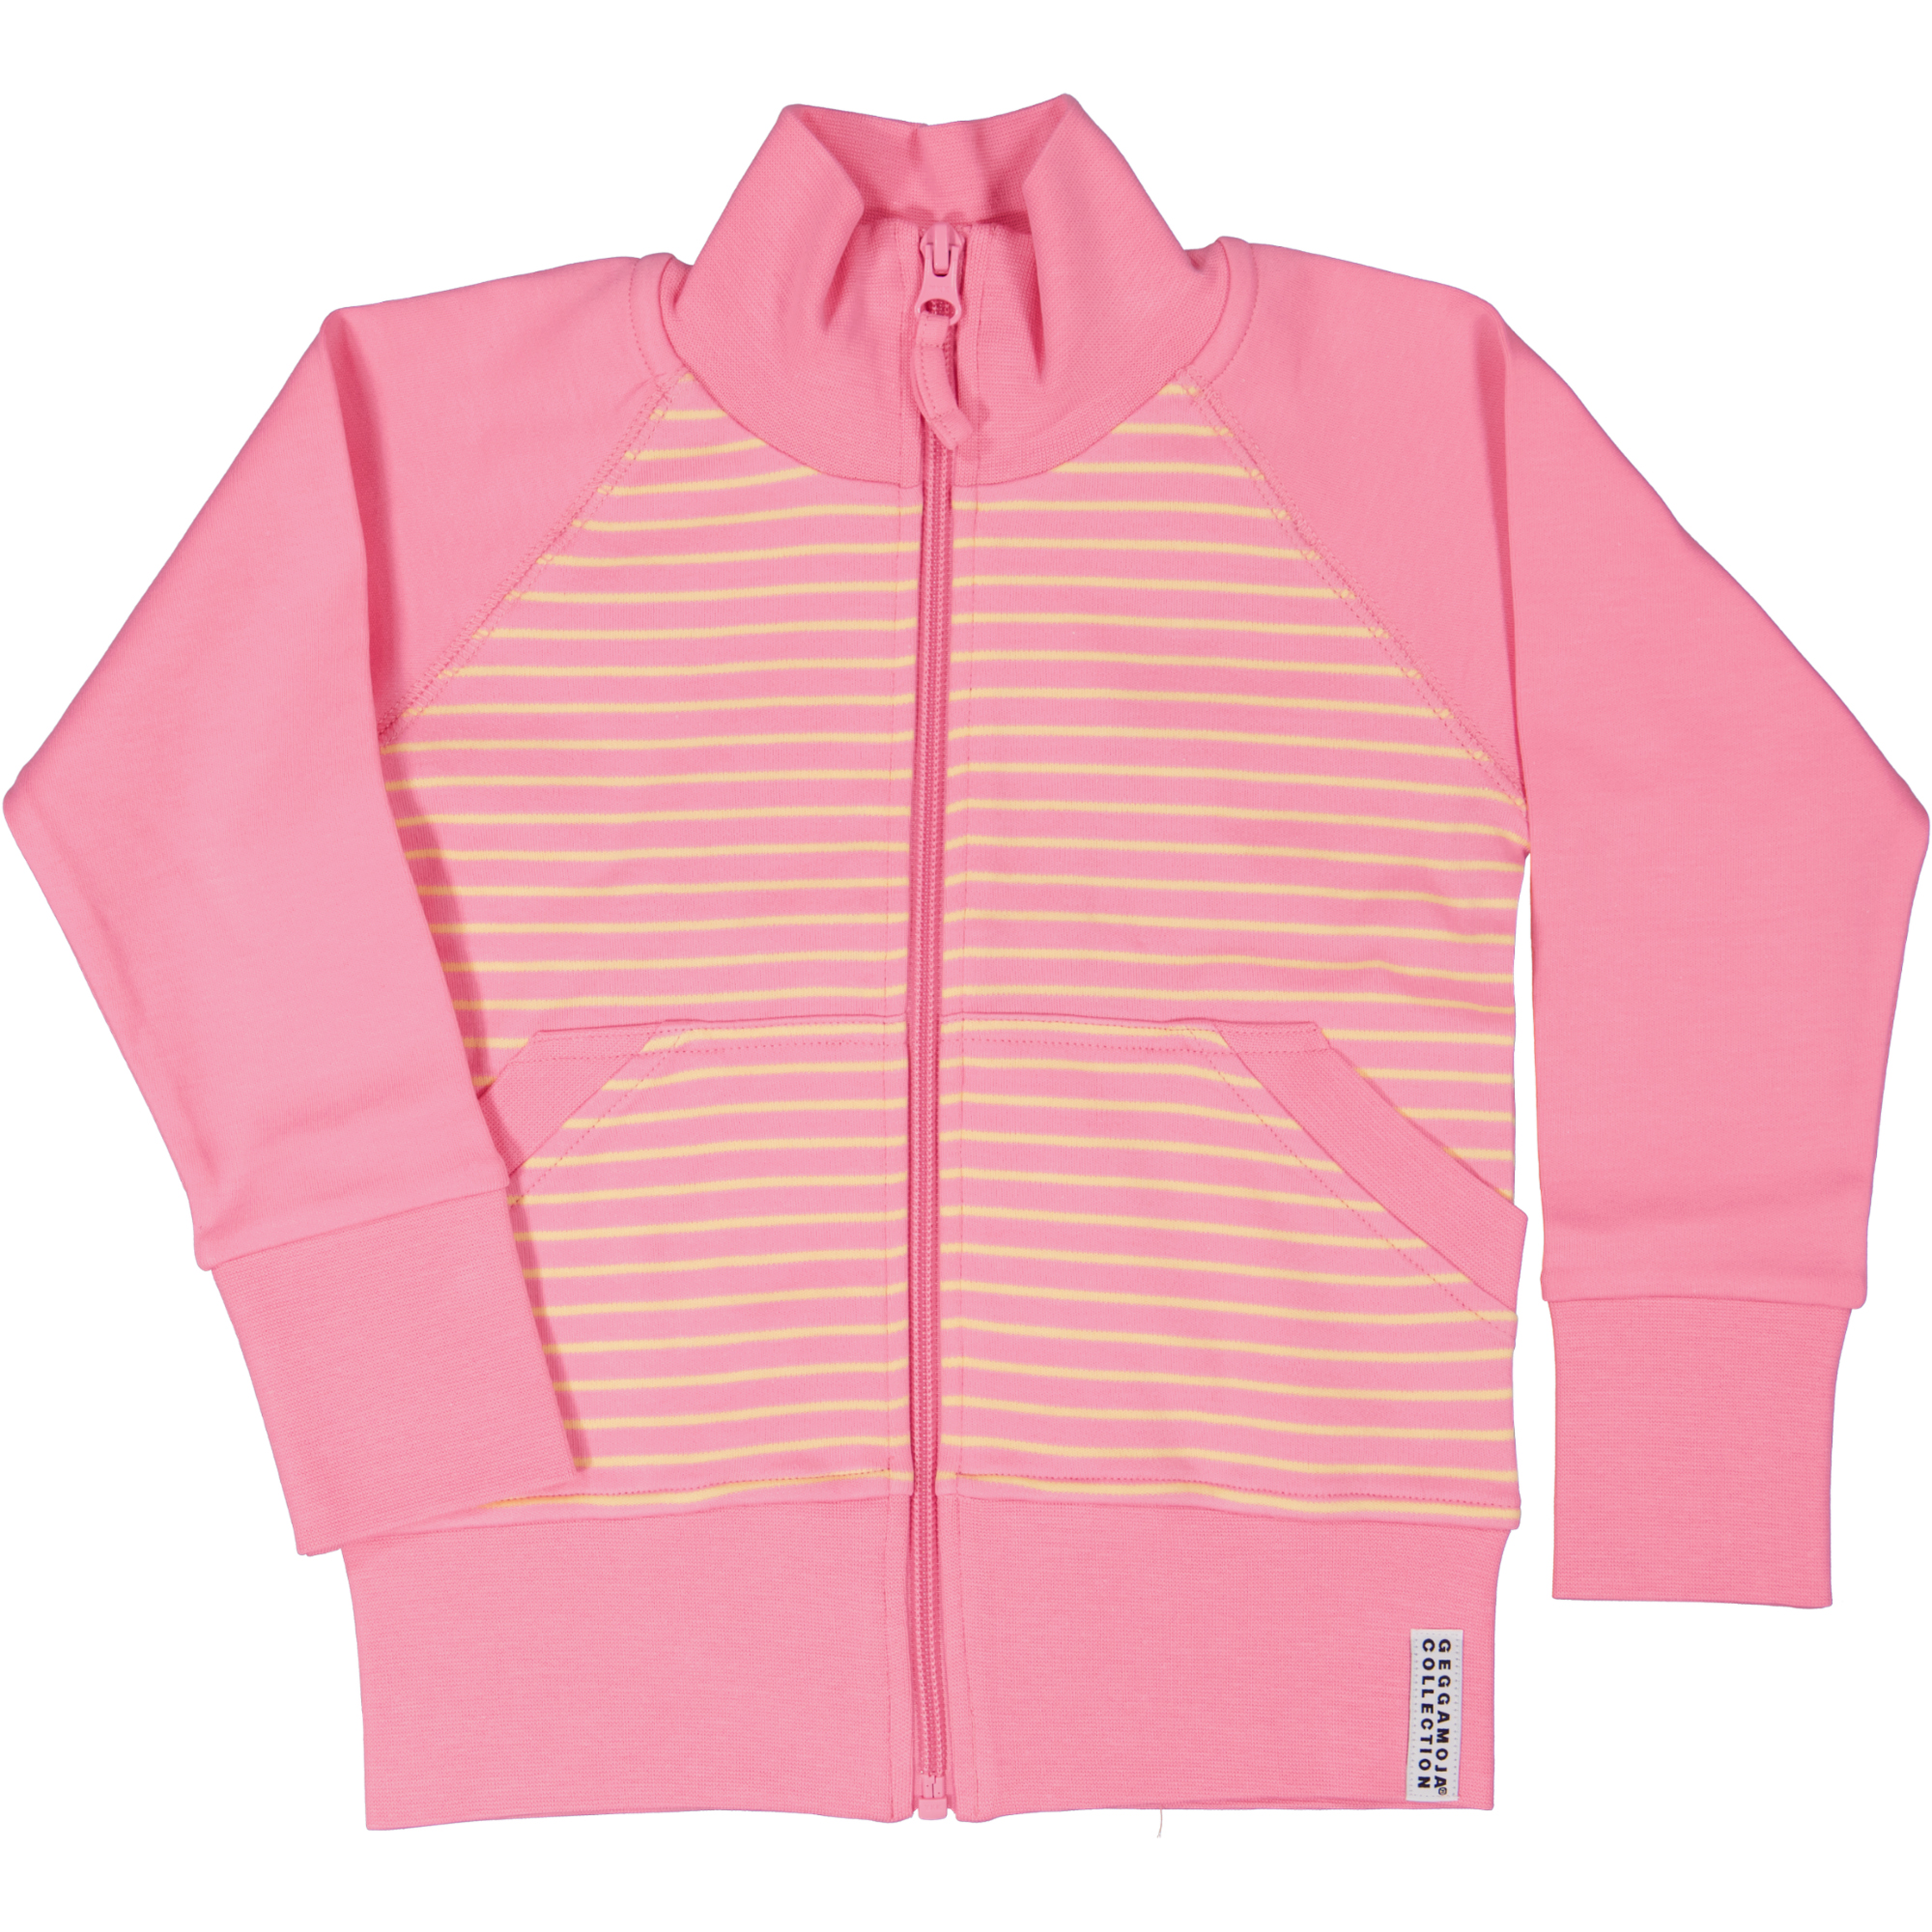 Zip sweater Pink/yellow